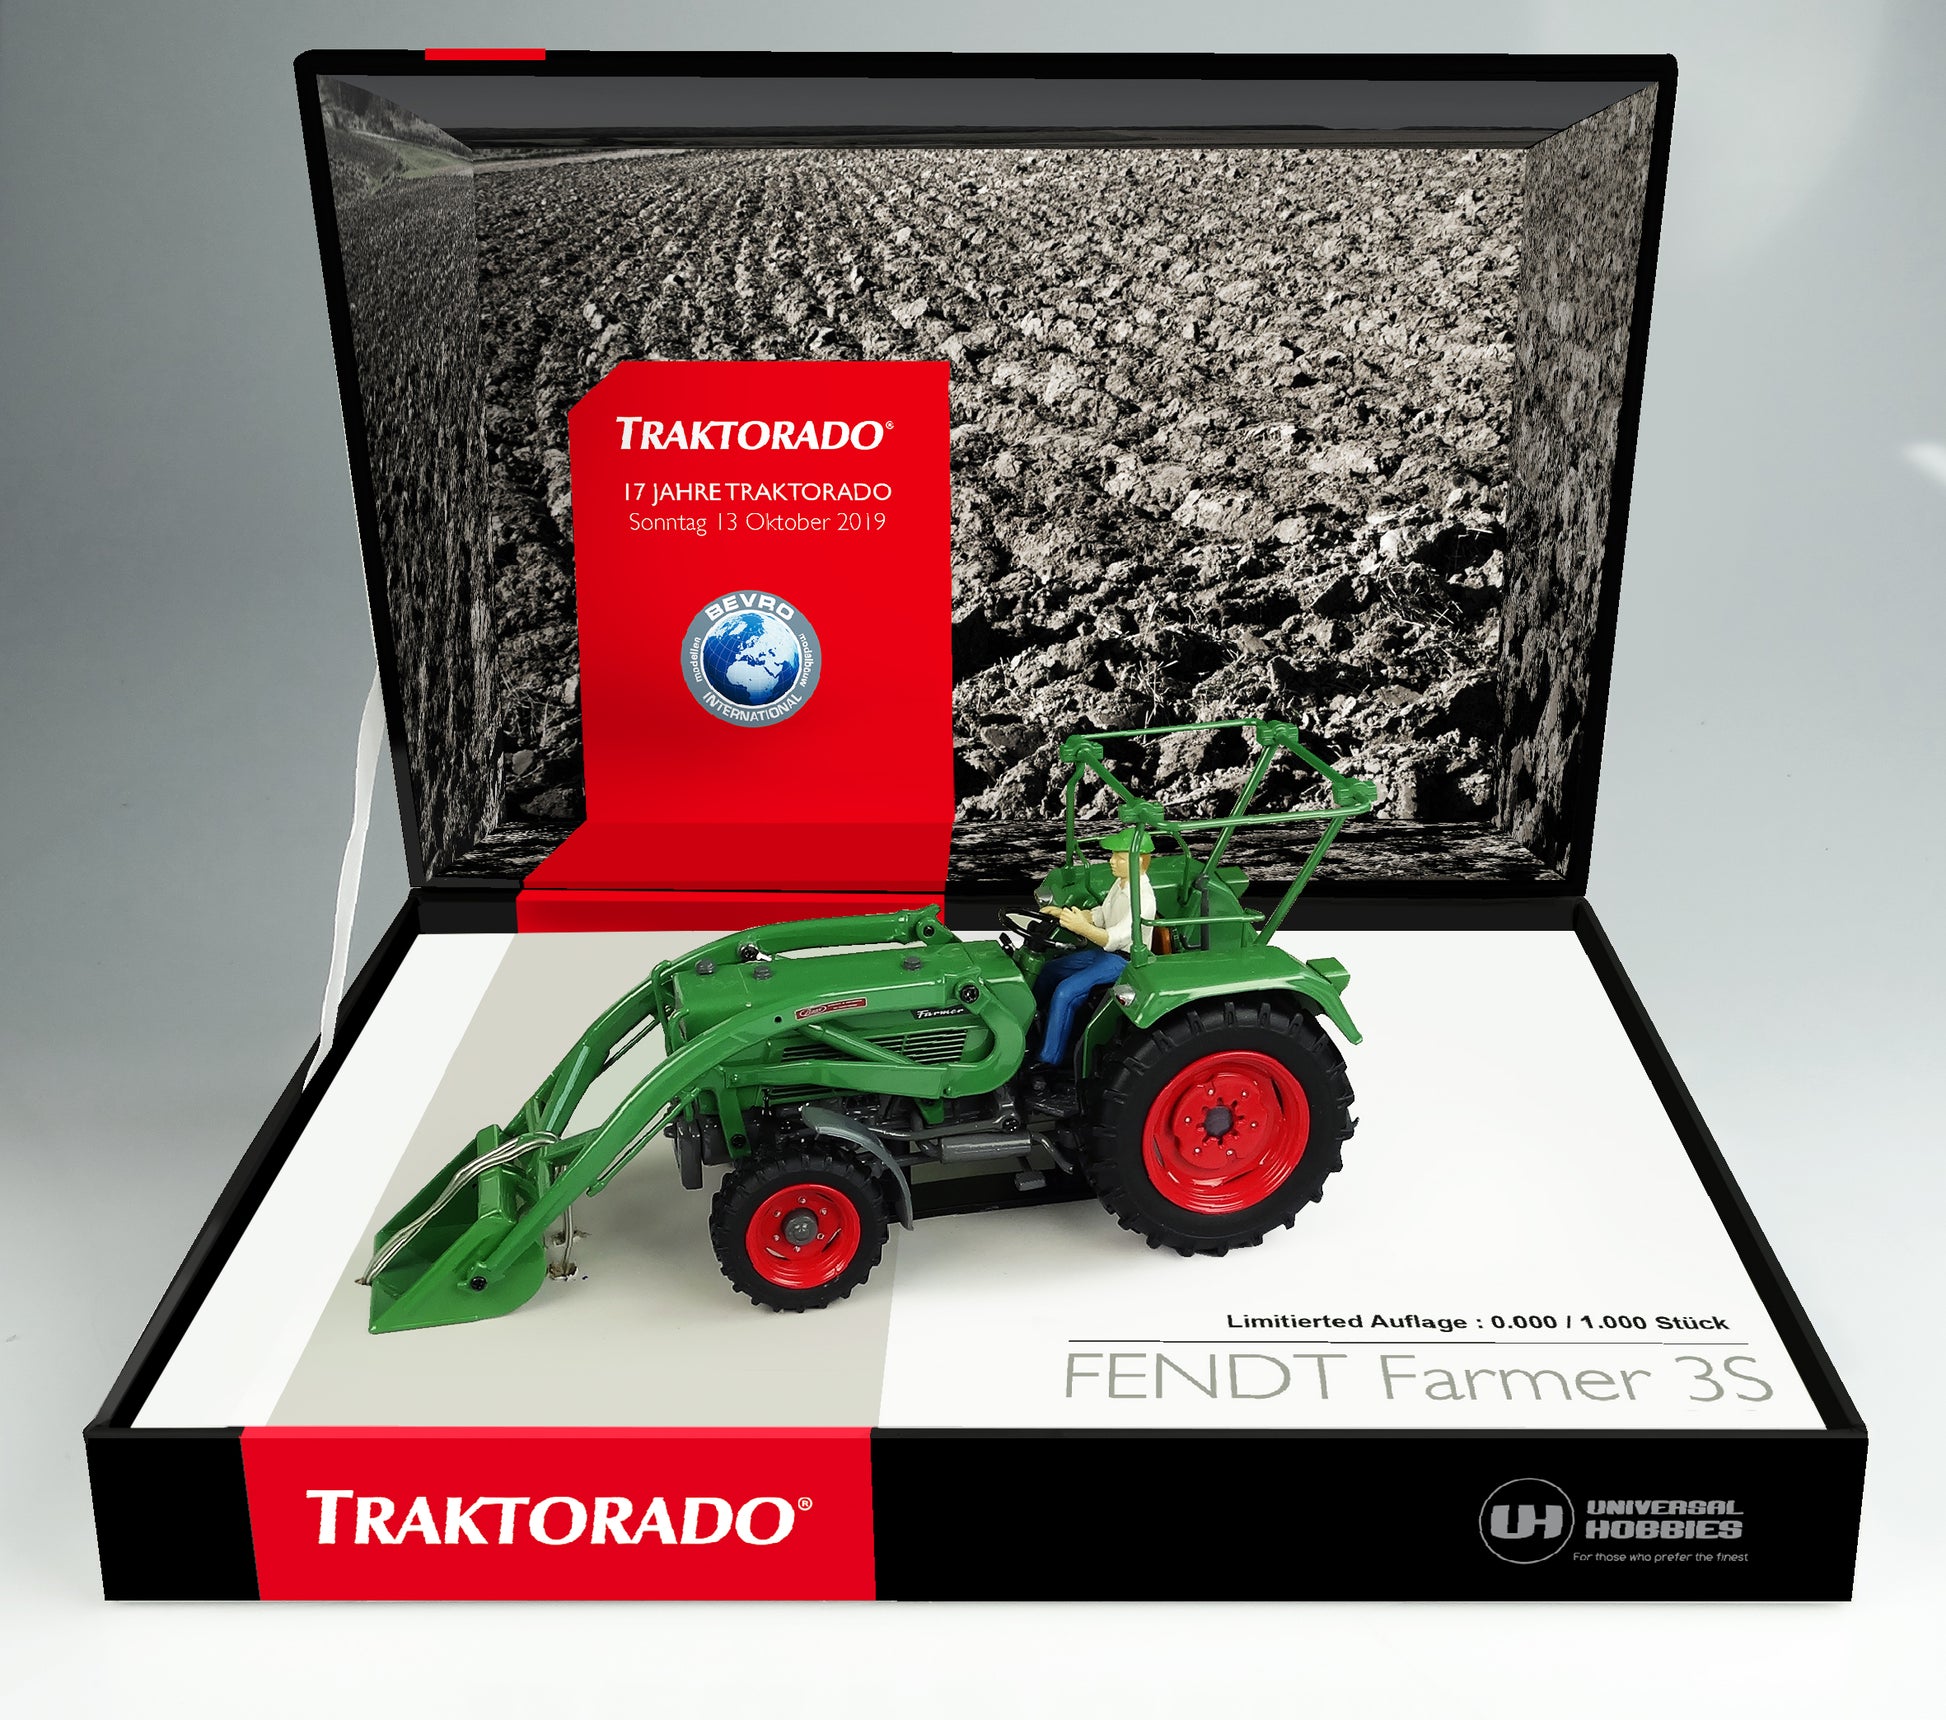 Fendt 3S Traktorado Limited Edition